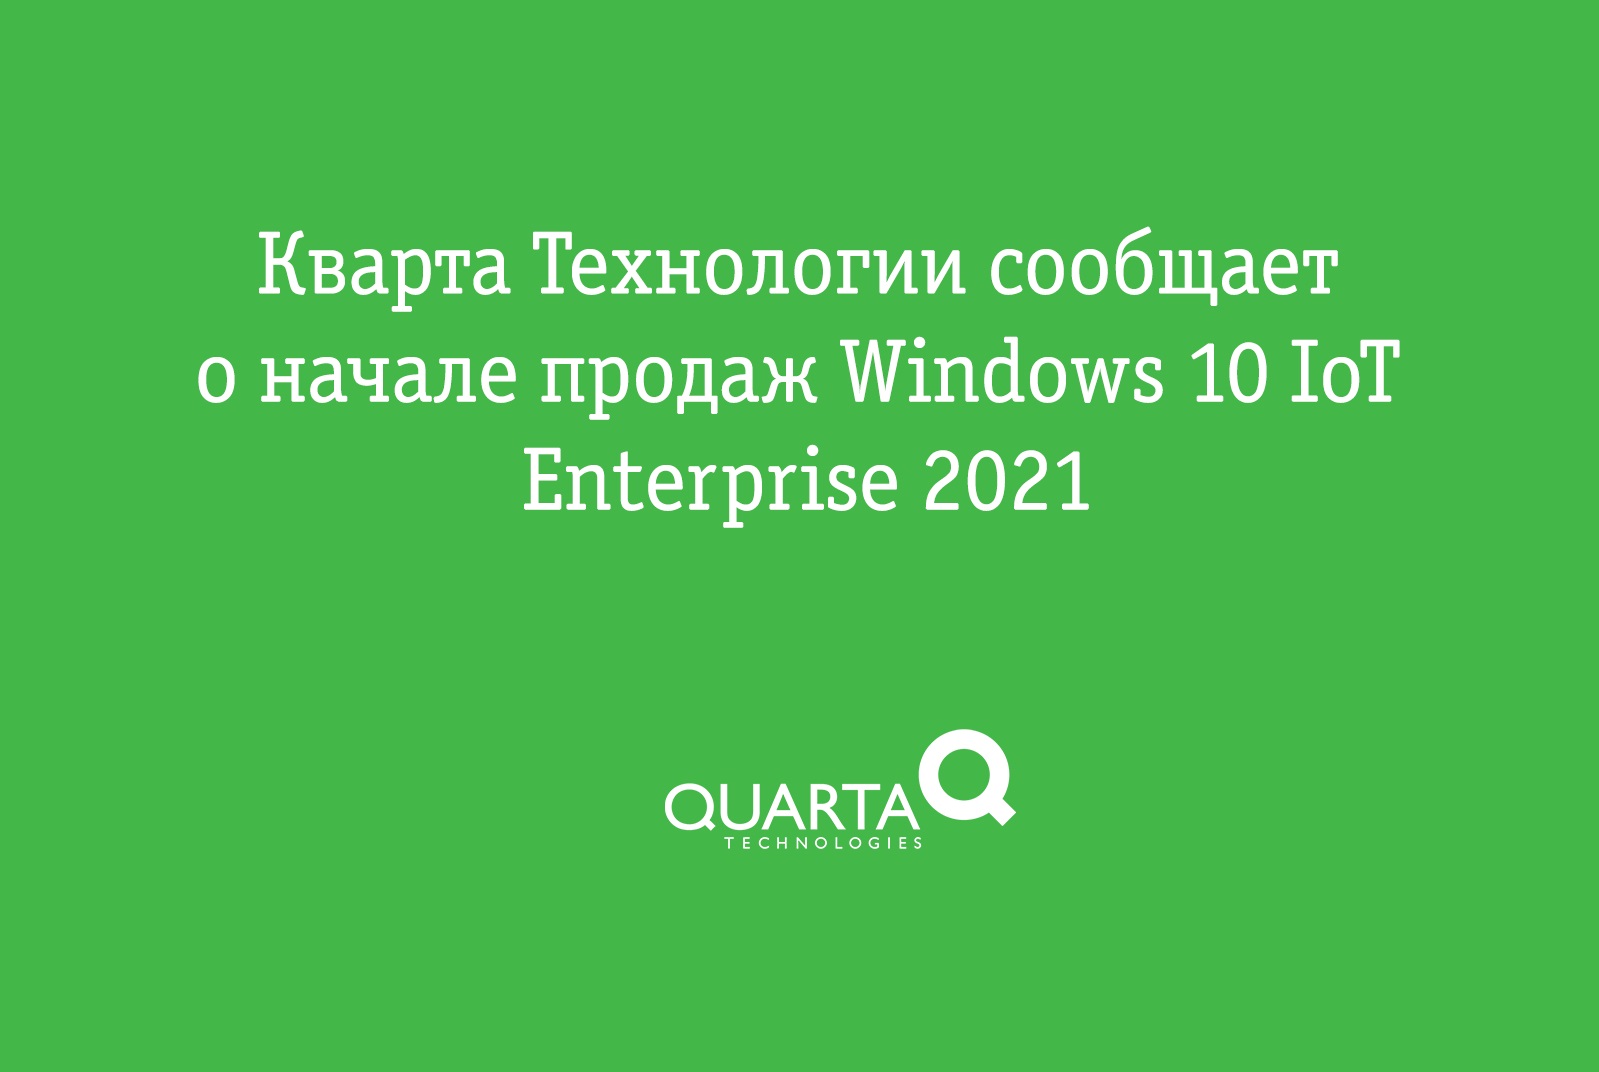 Кварта Технологии сообщает о начале продаж Windows 10 IoT Enterprise 2021